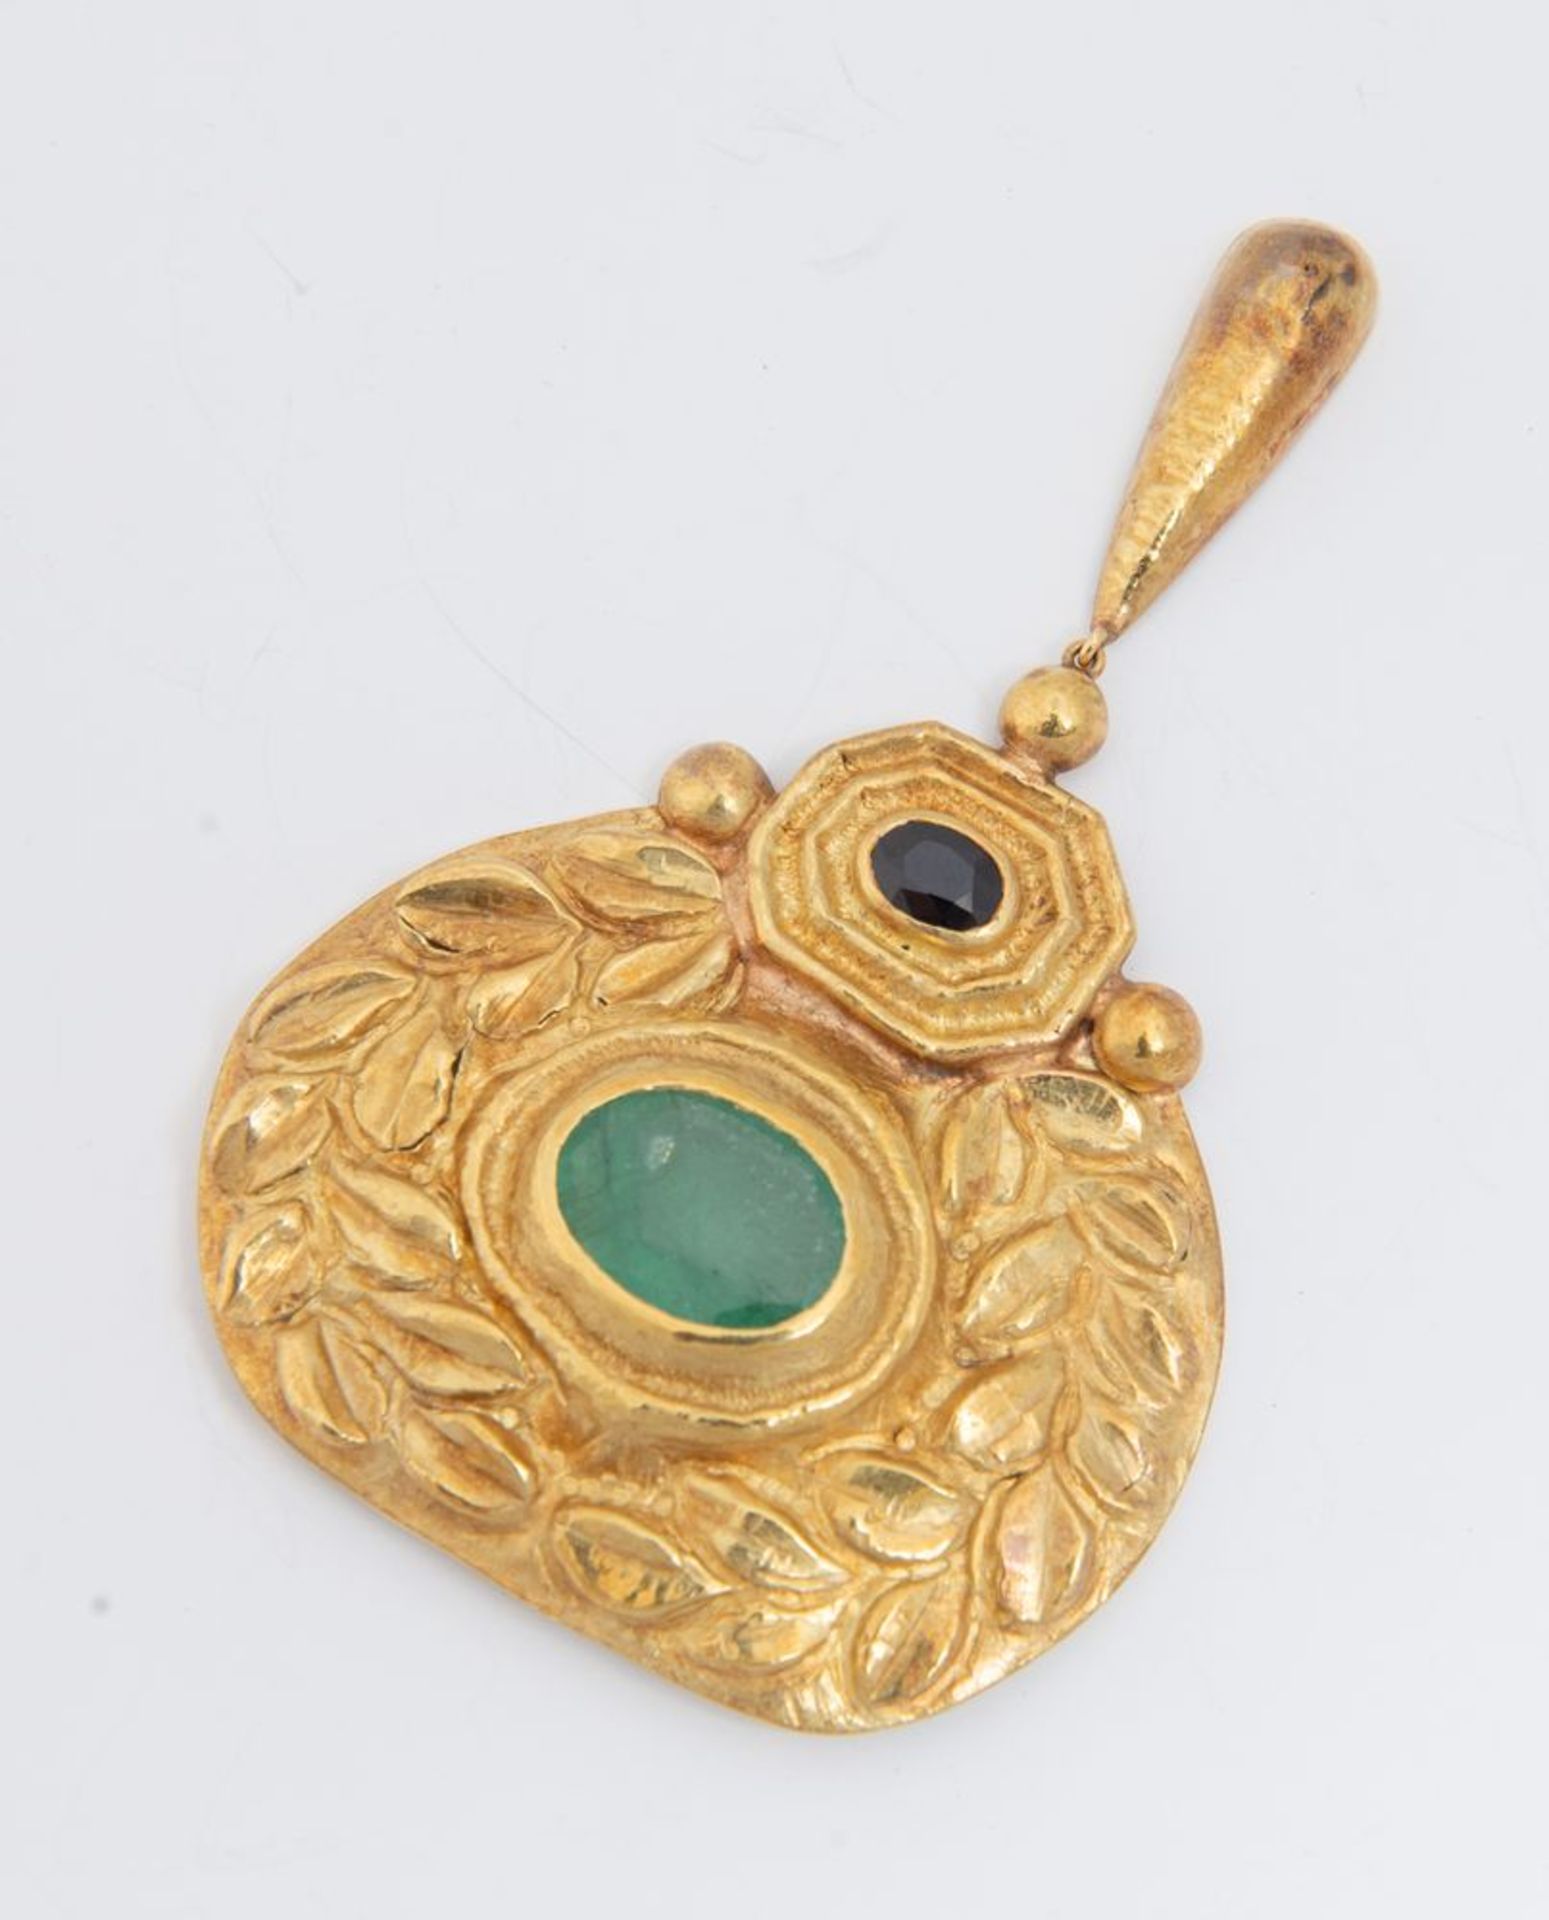 Pendente in oro, zaffiro e smeraldo. Realizzato come un medaglione sbalzato e inciso a motivi vegeta - Image 2 of 3